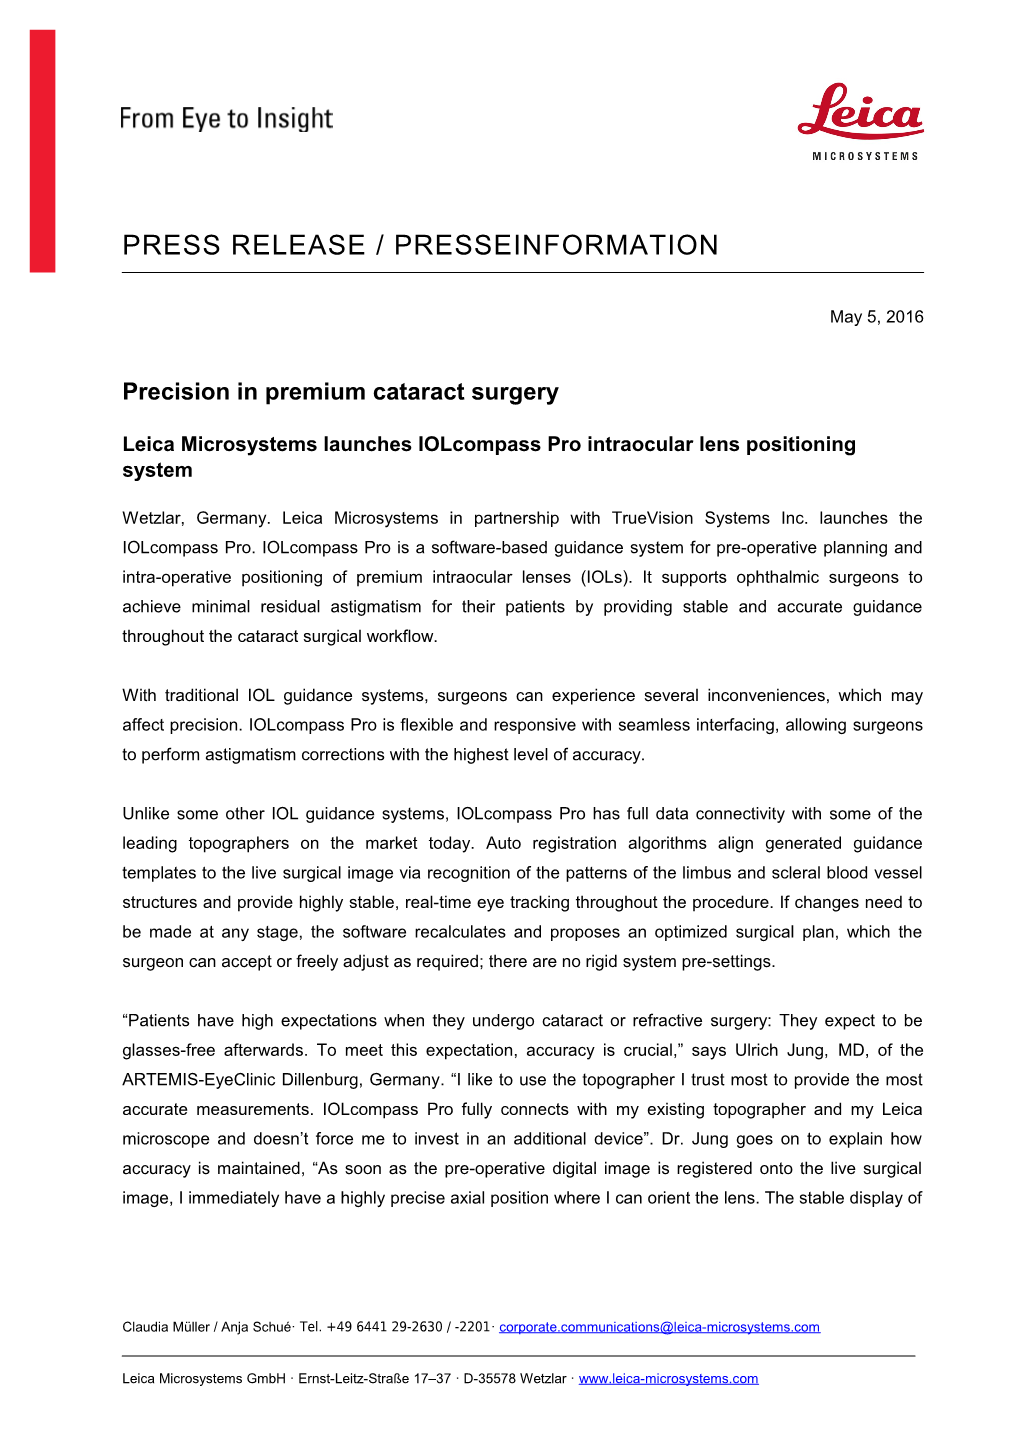 Precision in Premium Cataract Surgery